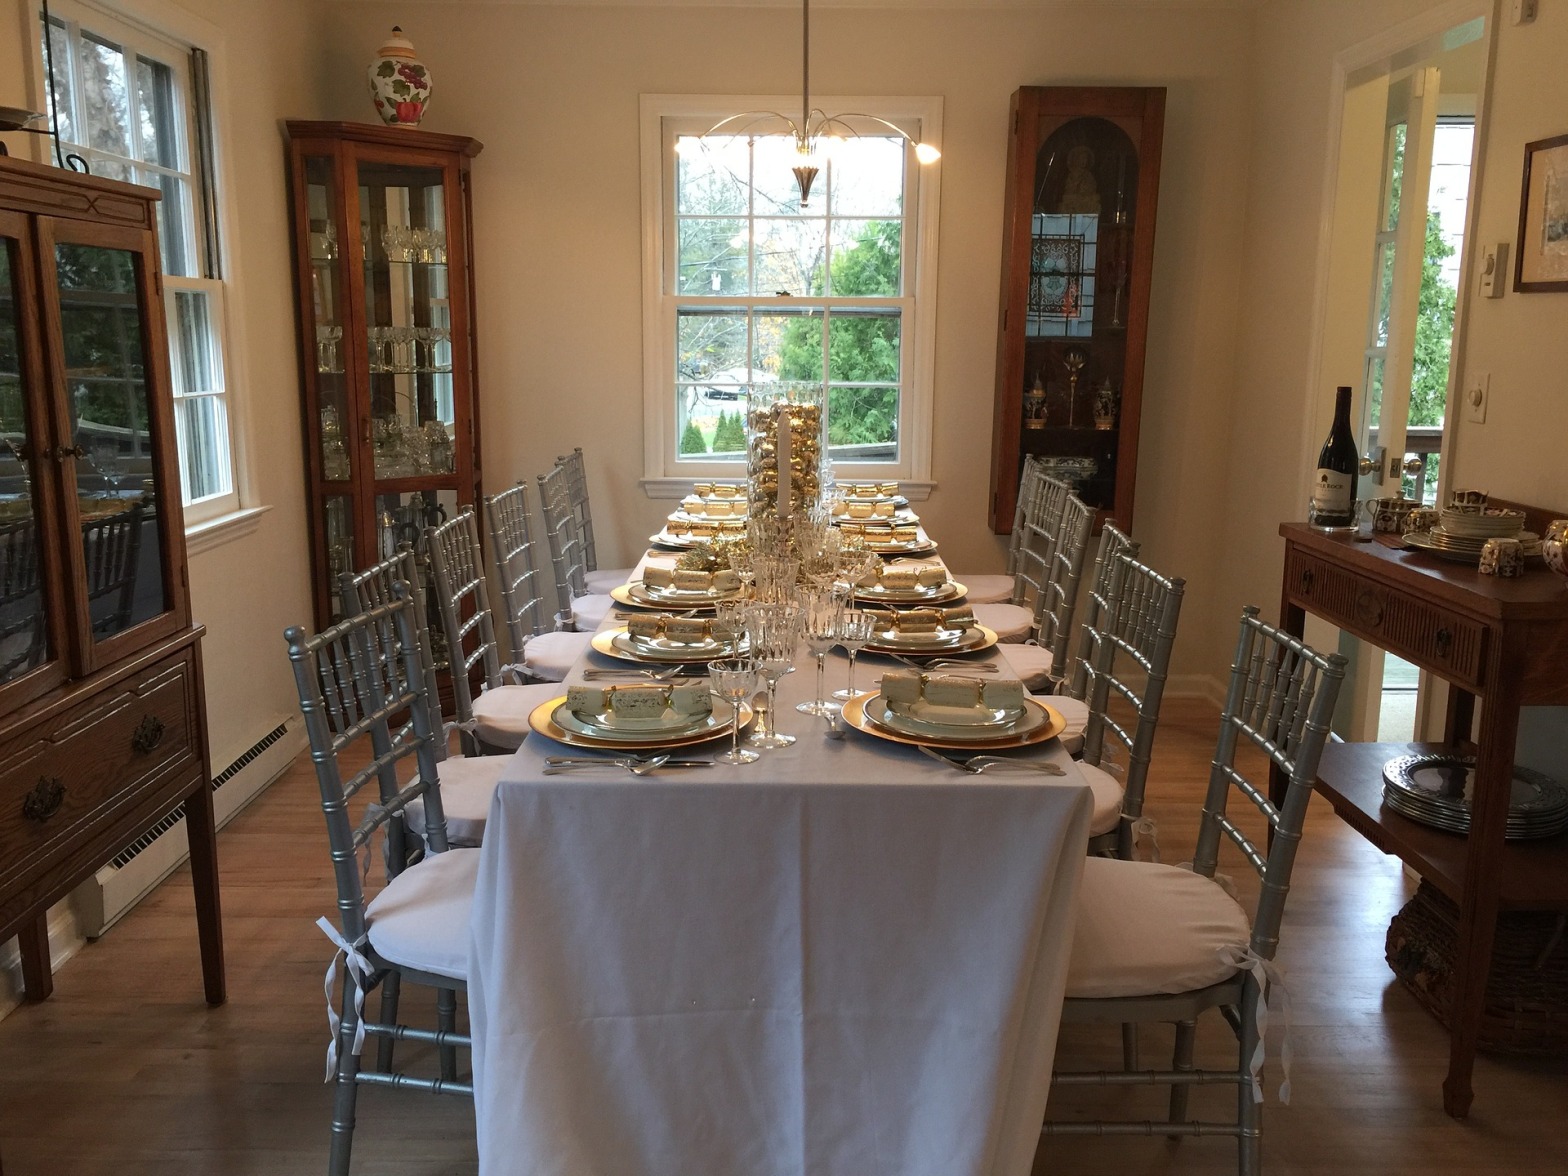 https://pixabay.com/en/dinner-party-table-setting-1927082/